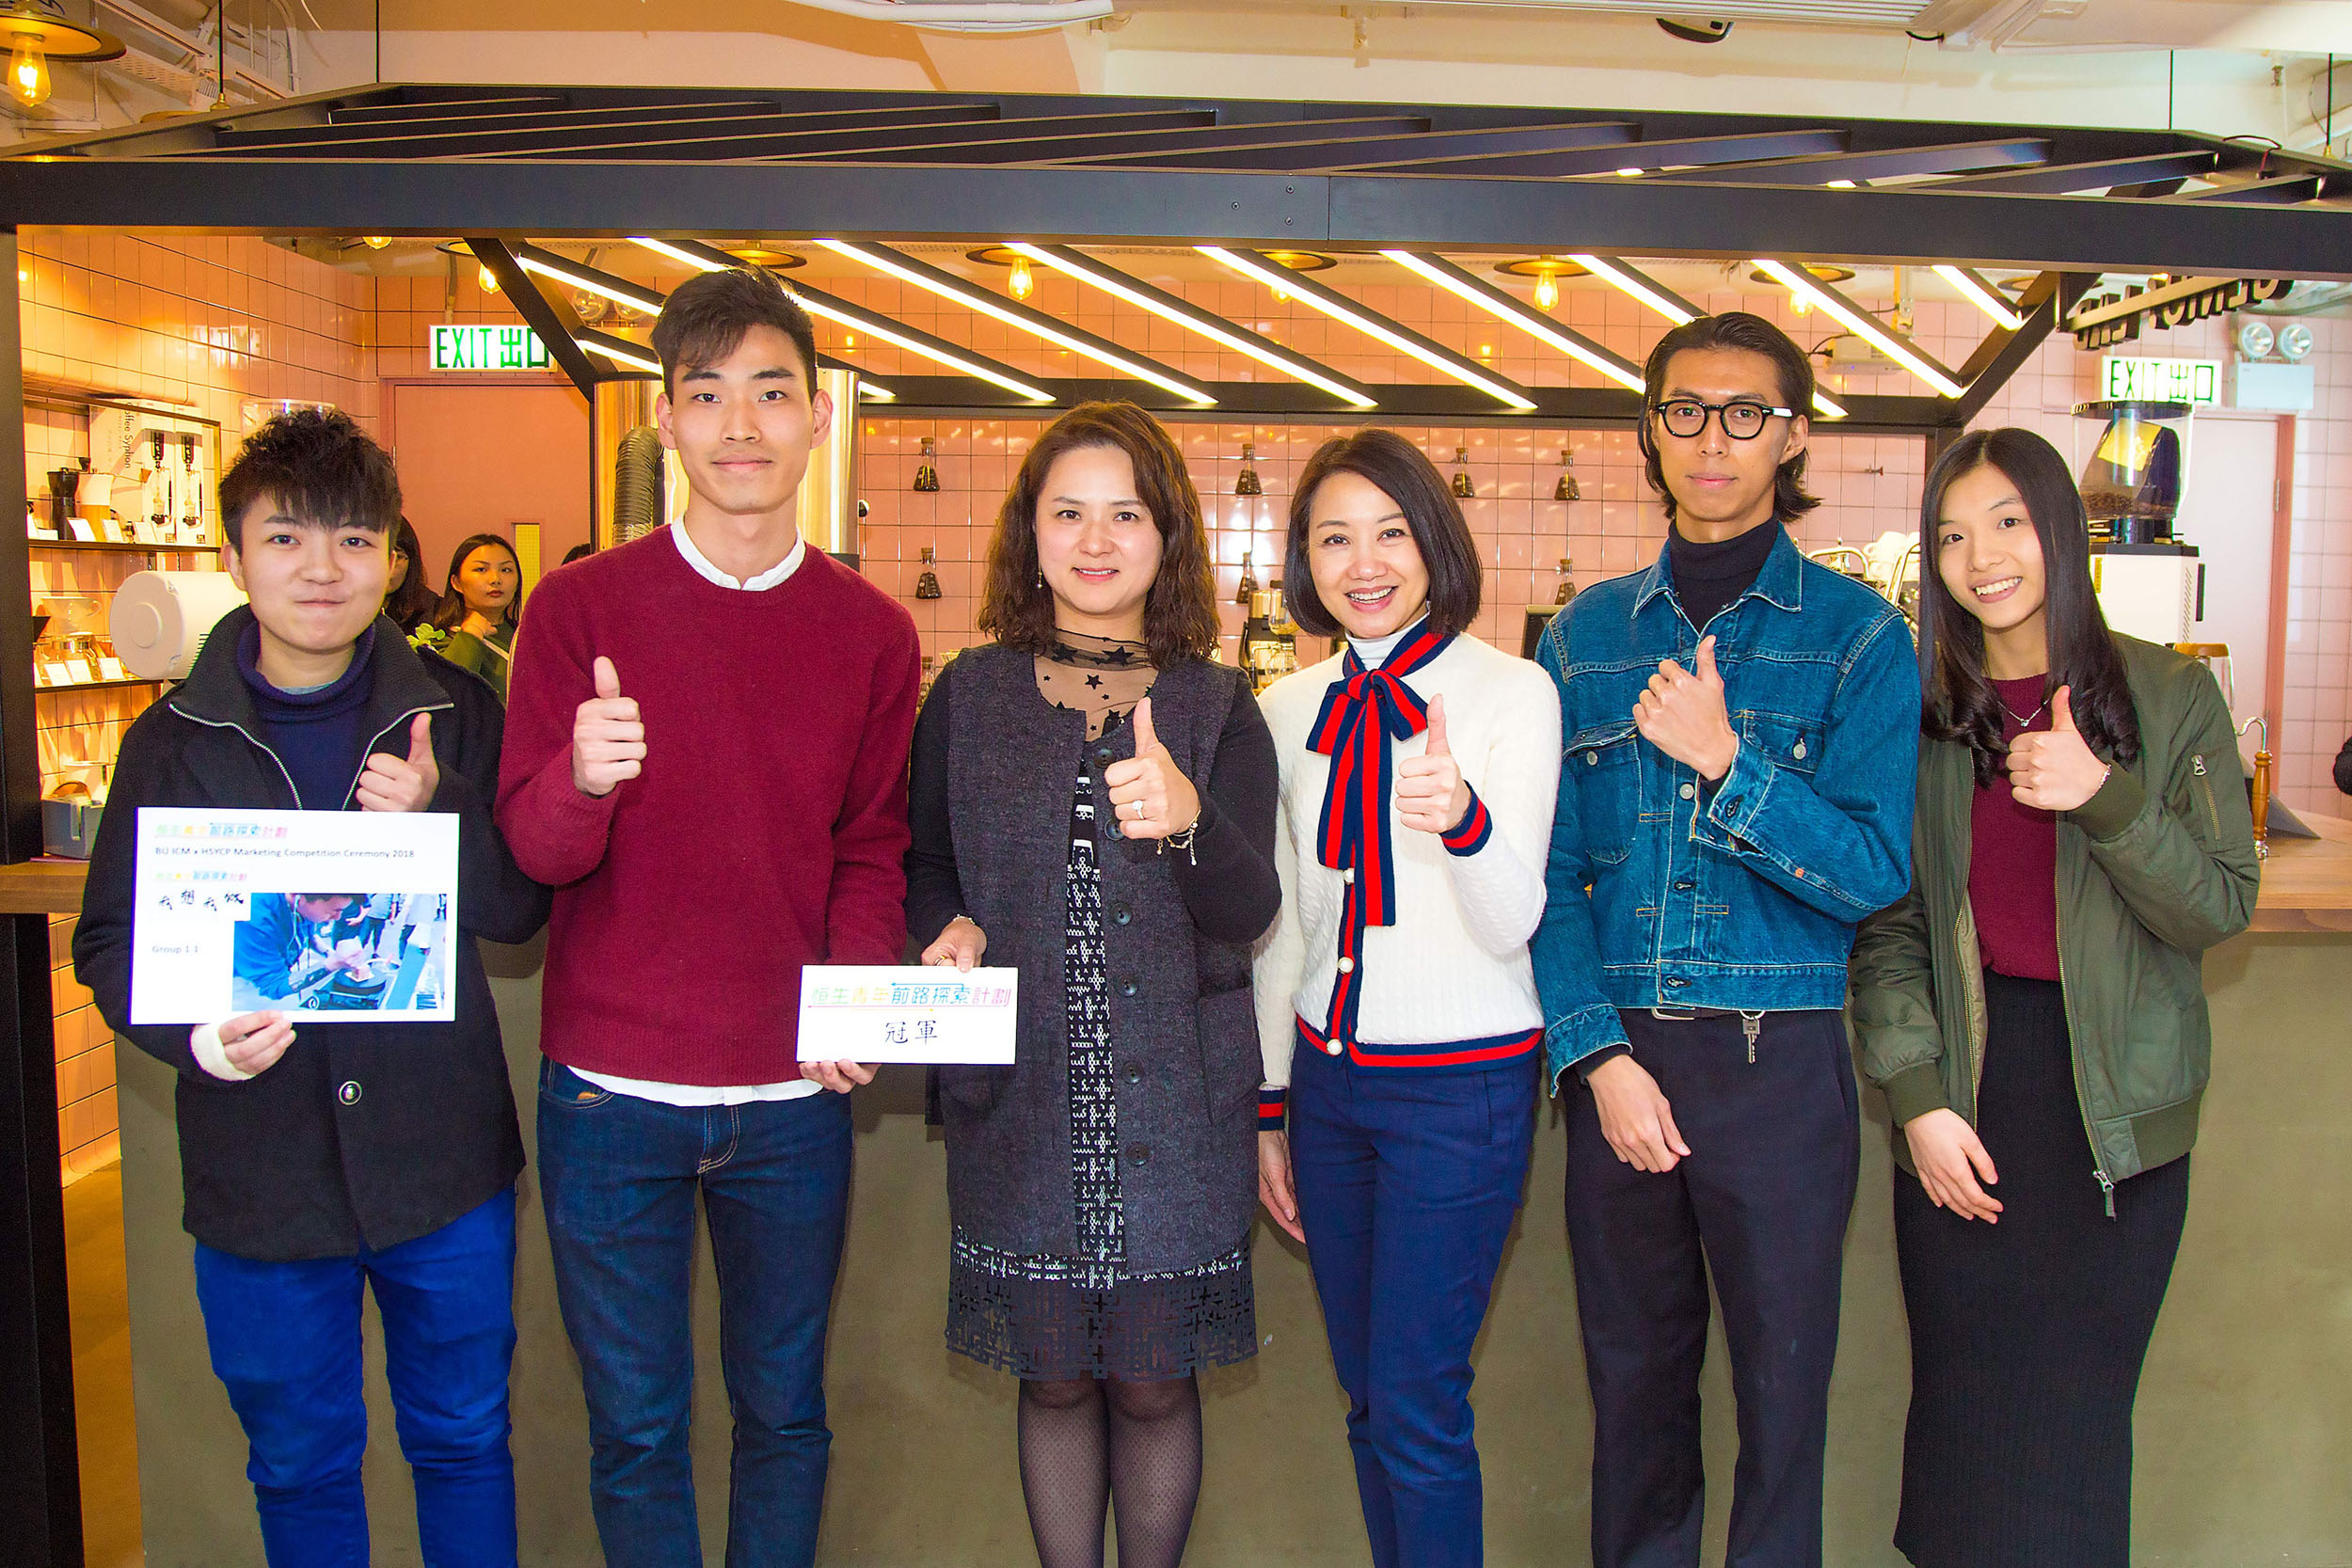 香港善导会副总干事李淑慧女士（左三）及恒生银行企业责任主管何卓惠女士（右三）颁发奖项予冠军队伍。